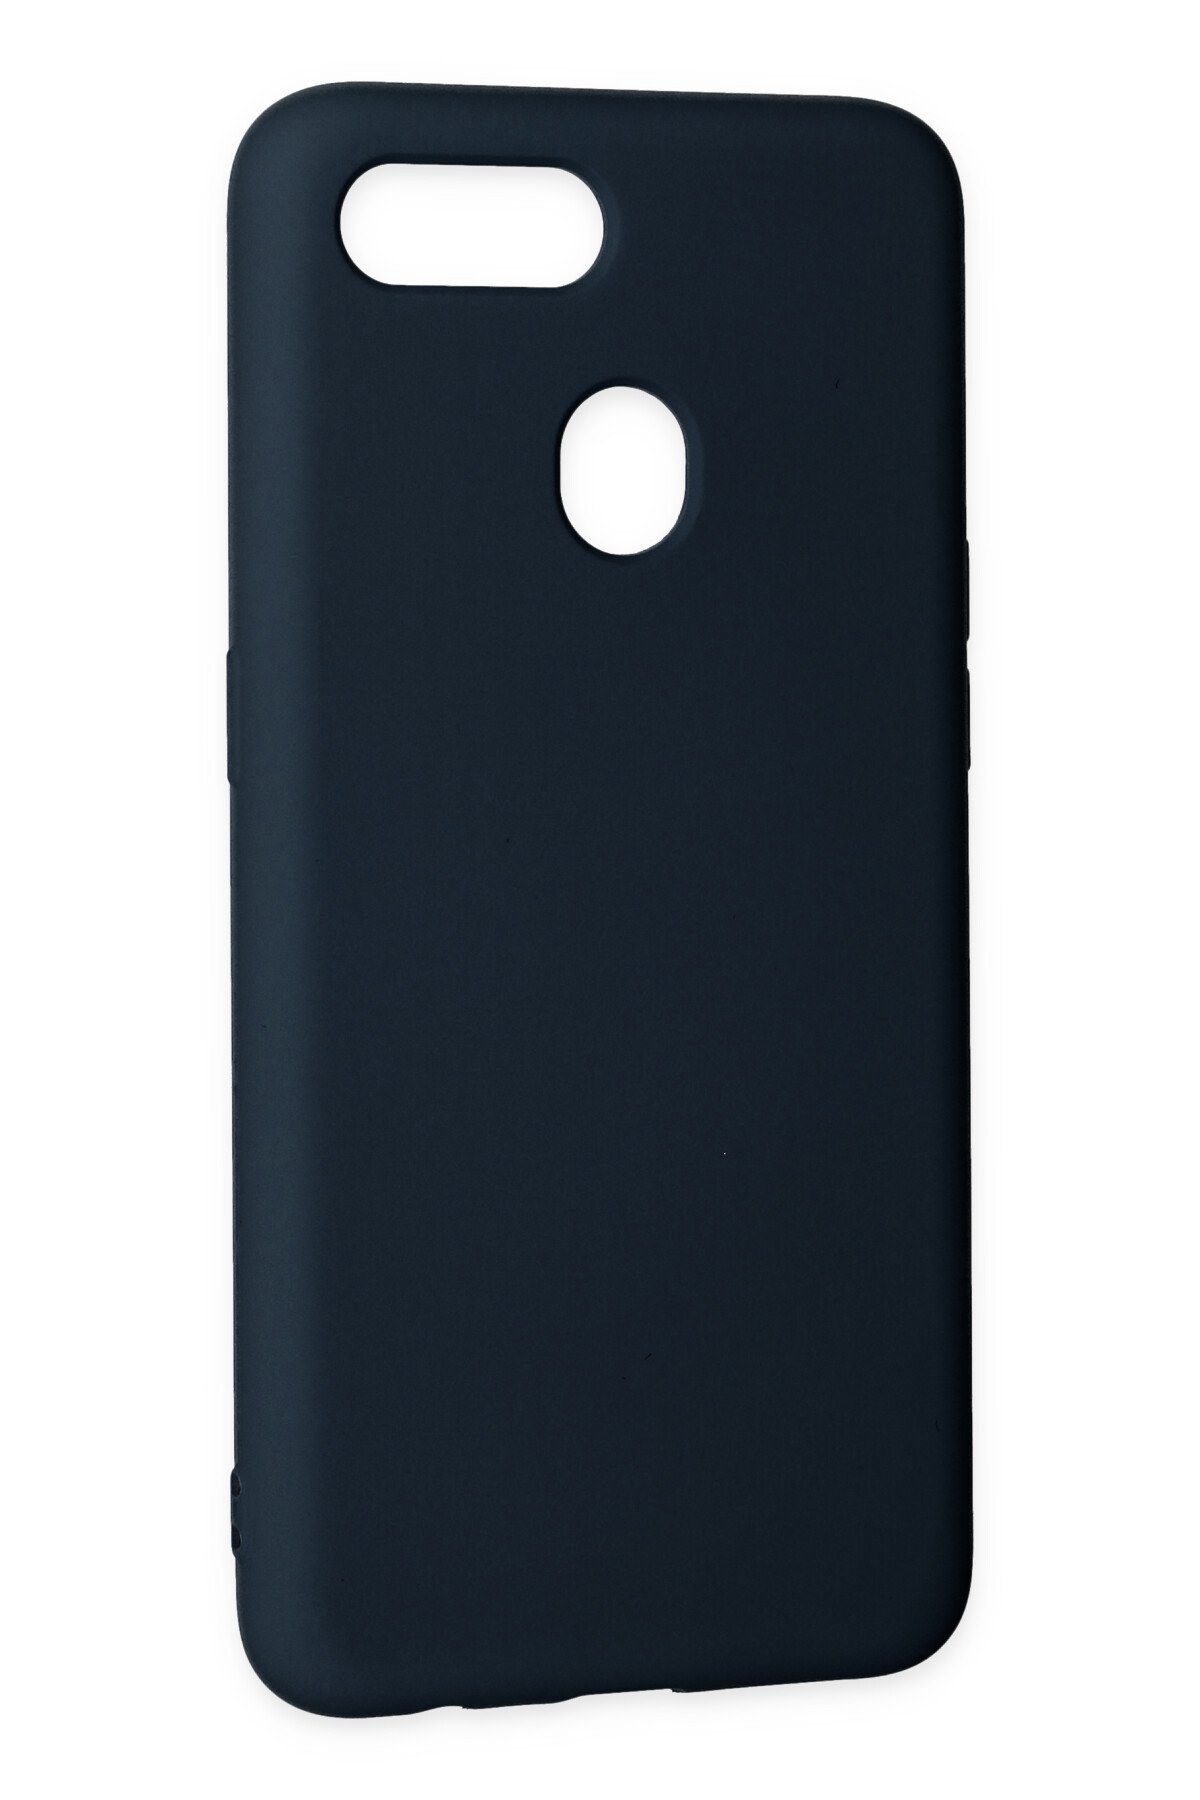 Newface Oppo AX7 Kılıf Nano içi Kadife  Silikon - Mavi